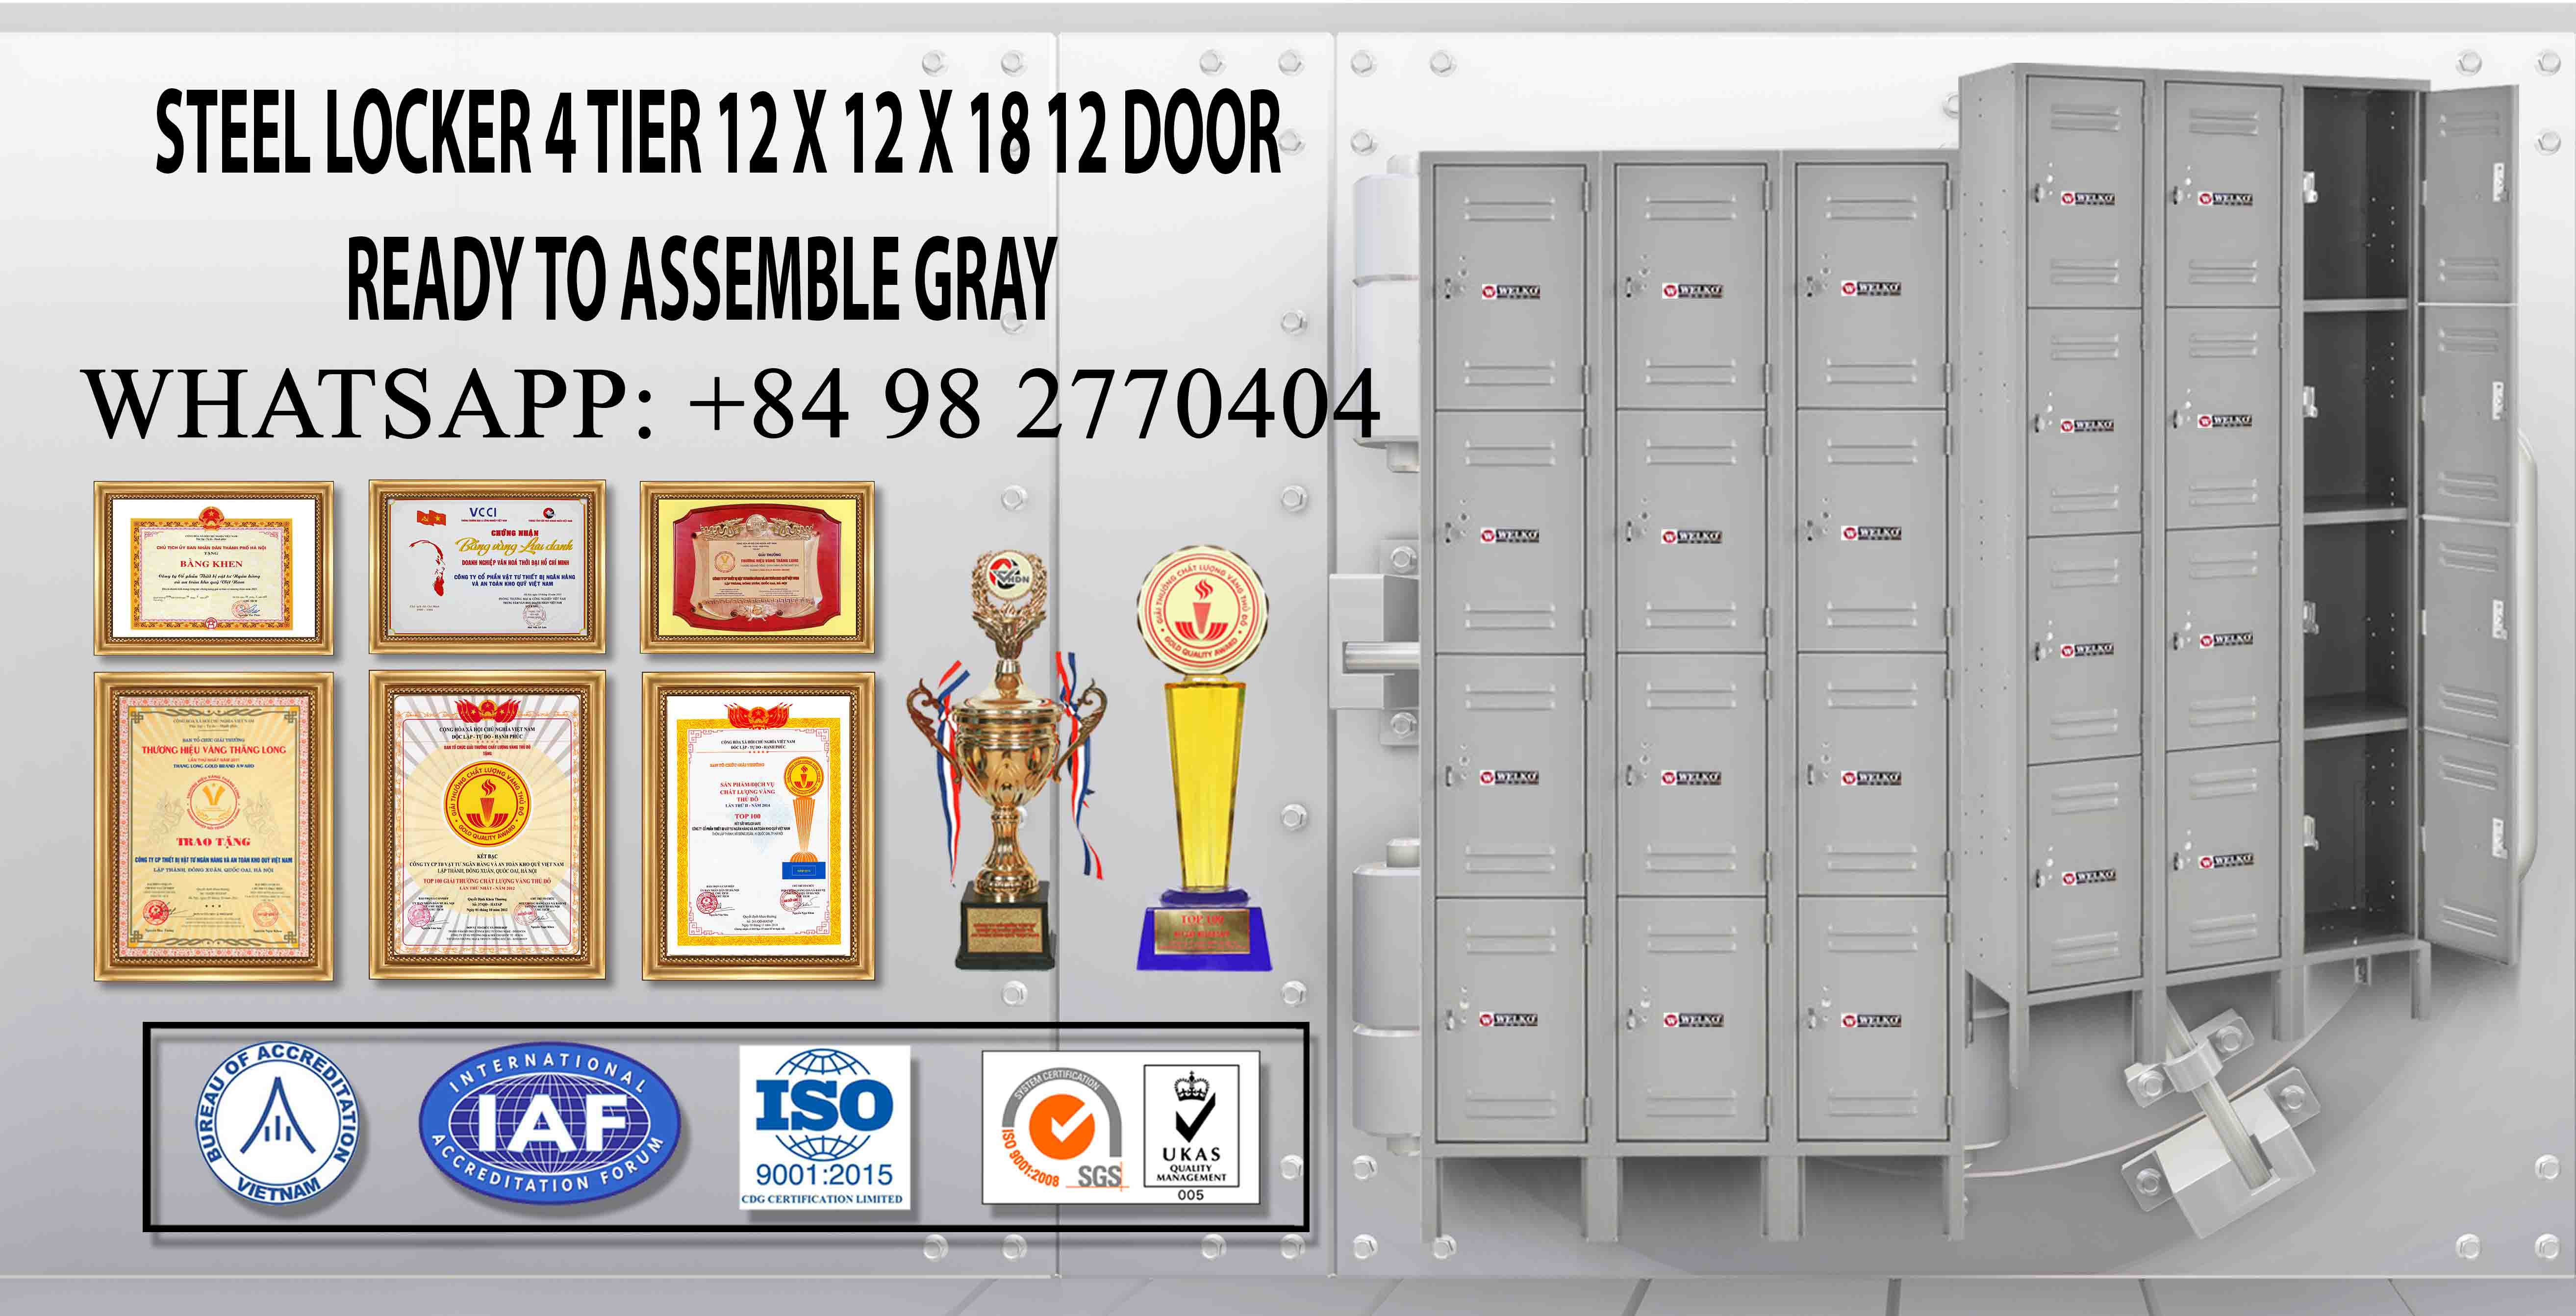 hình ảnh sản phẩm Steel Locker 6 Tier 12 x 12 x 12 6 Door Ready To Assemble Gray